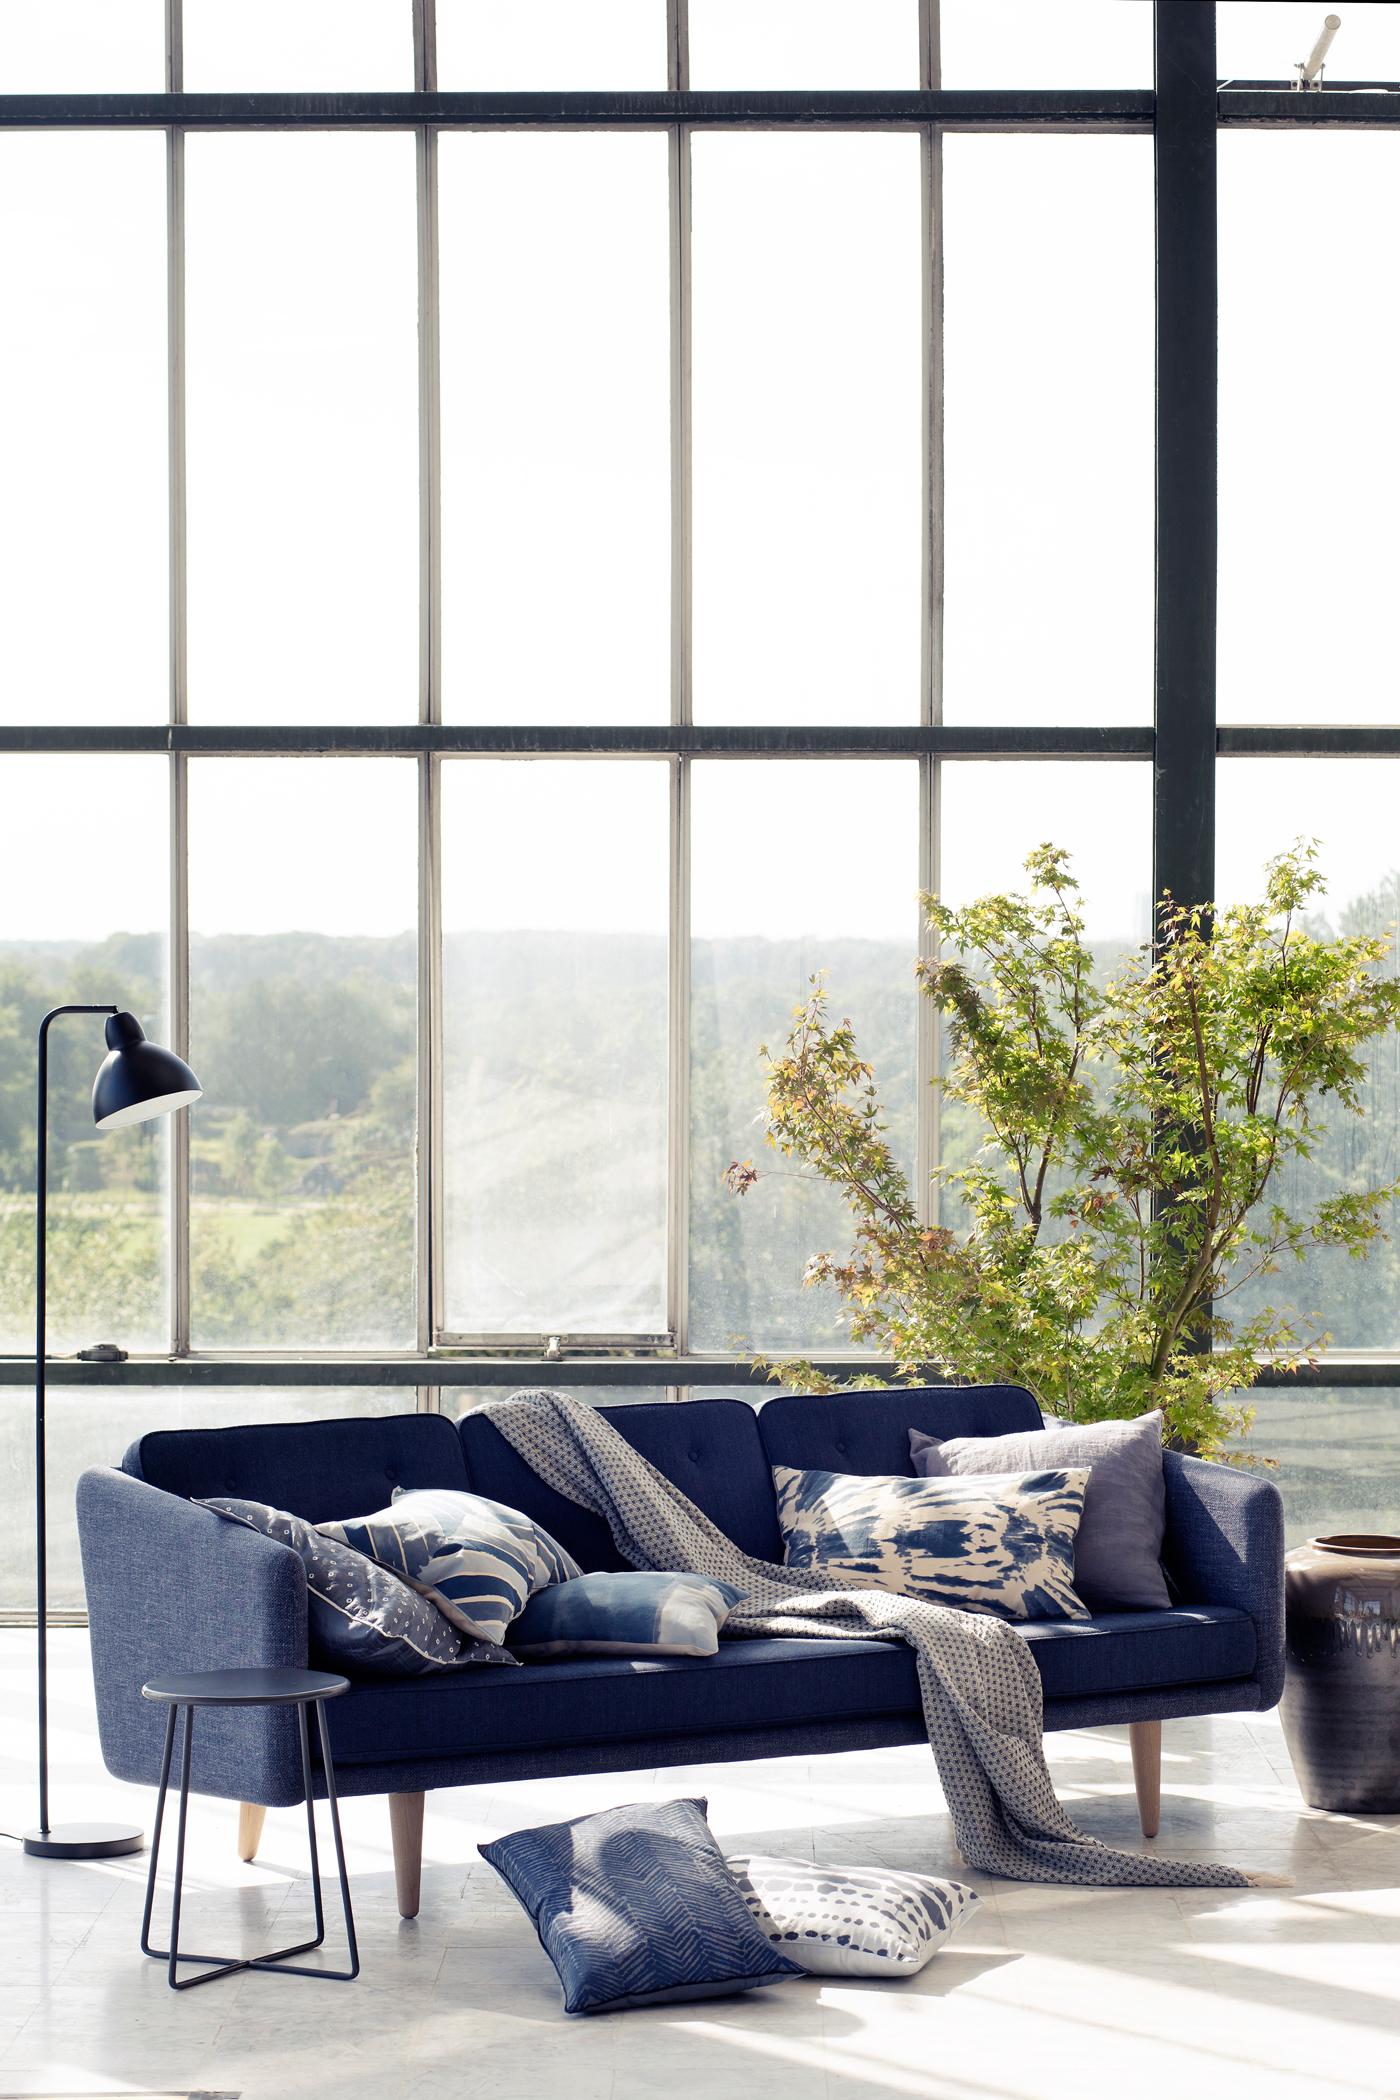 Sofa mit blauen Dekokissen #beistelltisch #stehlampe #tagesdecke #sofakissen #sofa #blauessofa #zimmergestaltung ©Broste Copenhagen